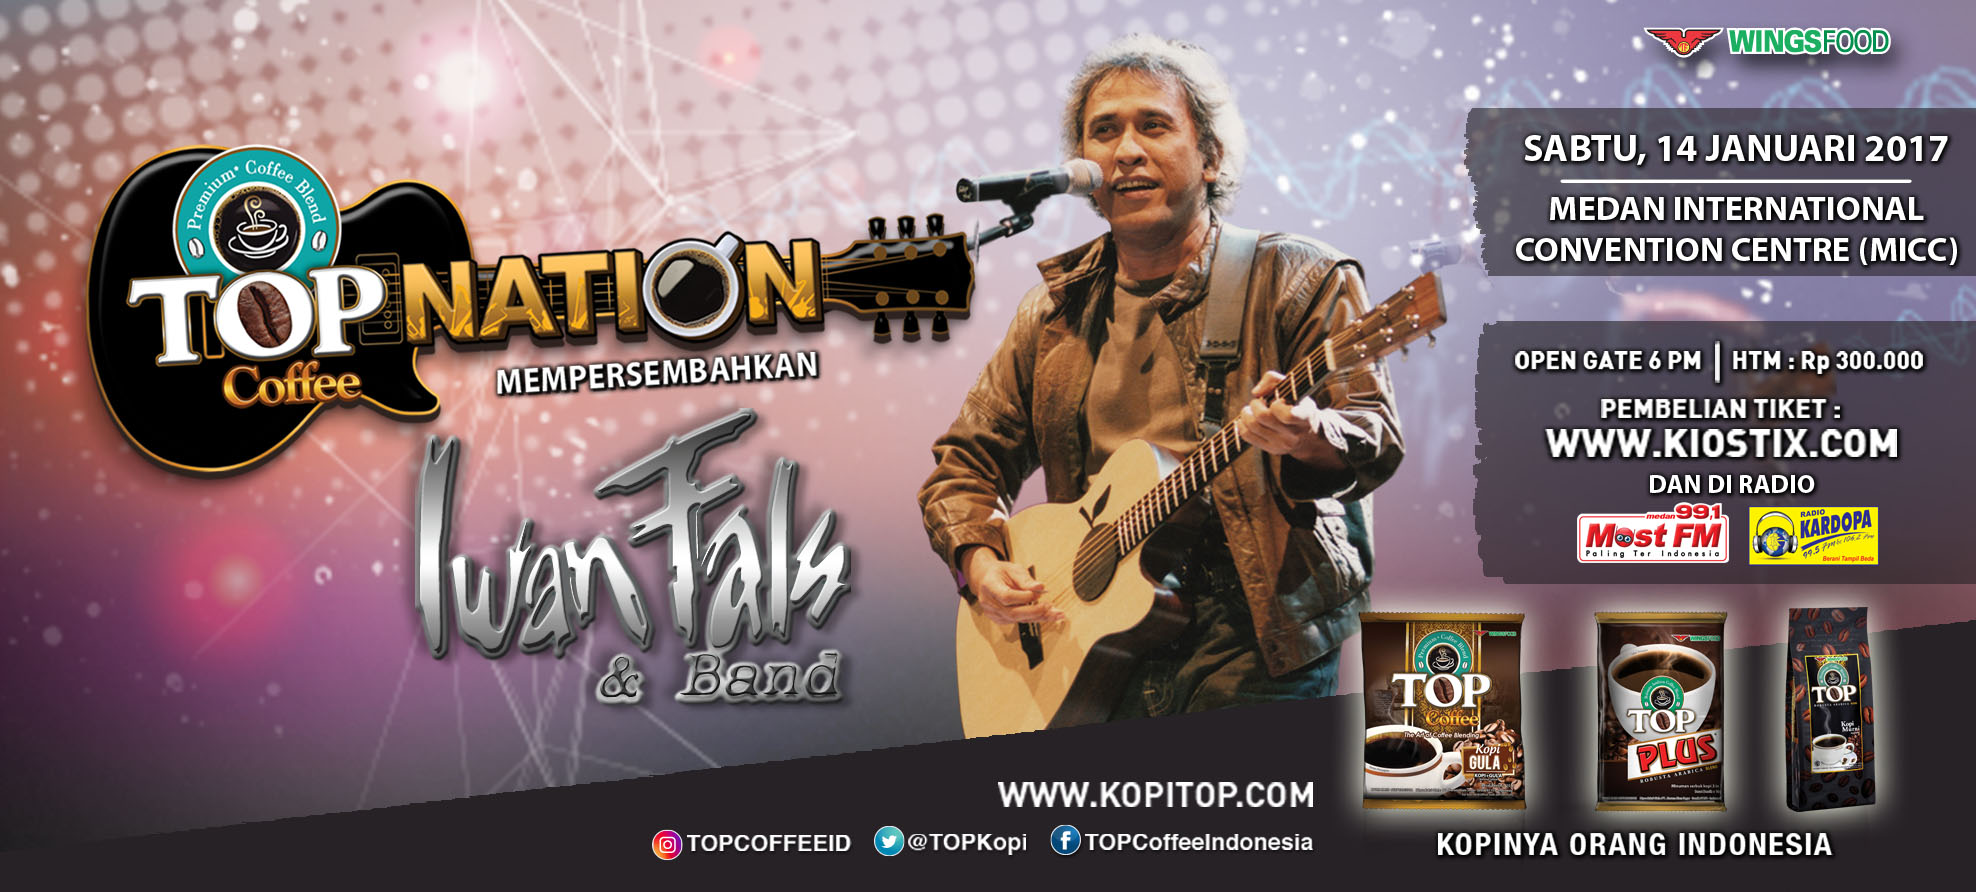 Top Nation Konser Iwan Fals  & Band di Medan 